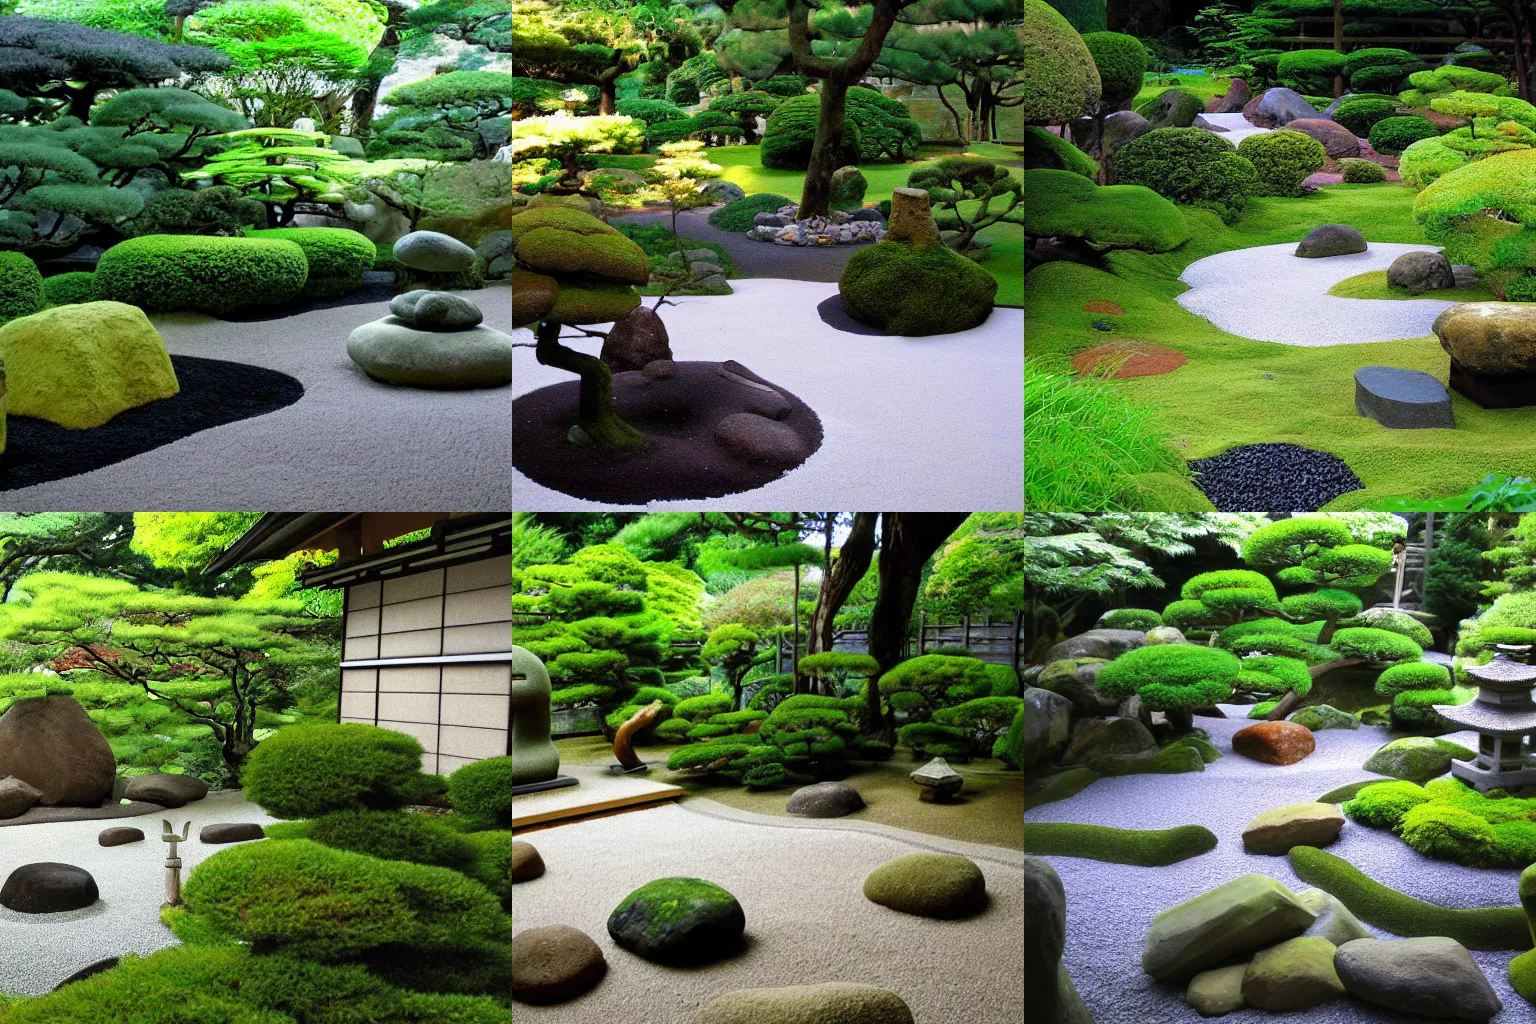 Prompt: japanese zen garden